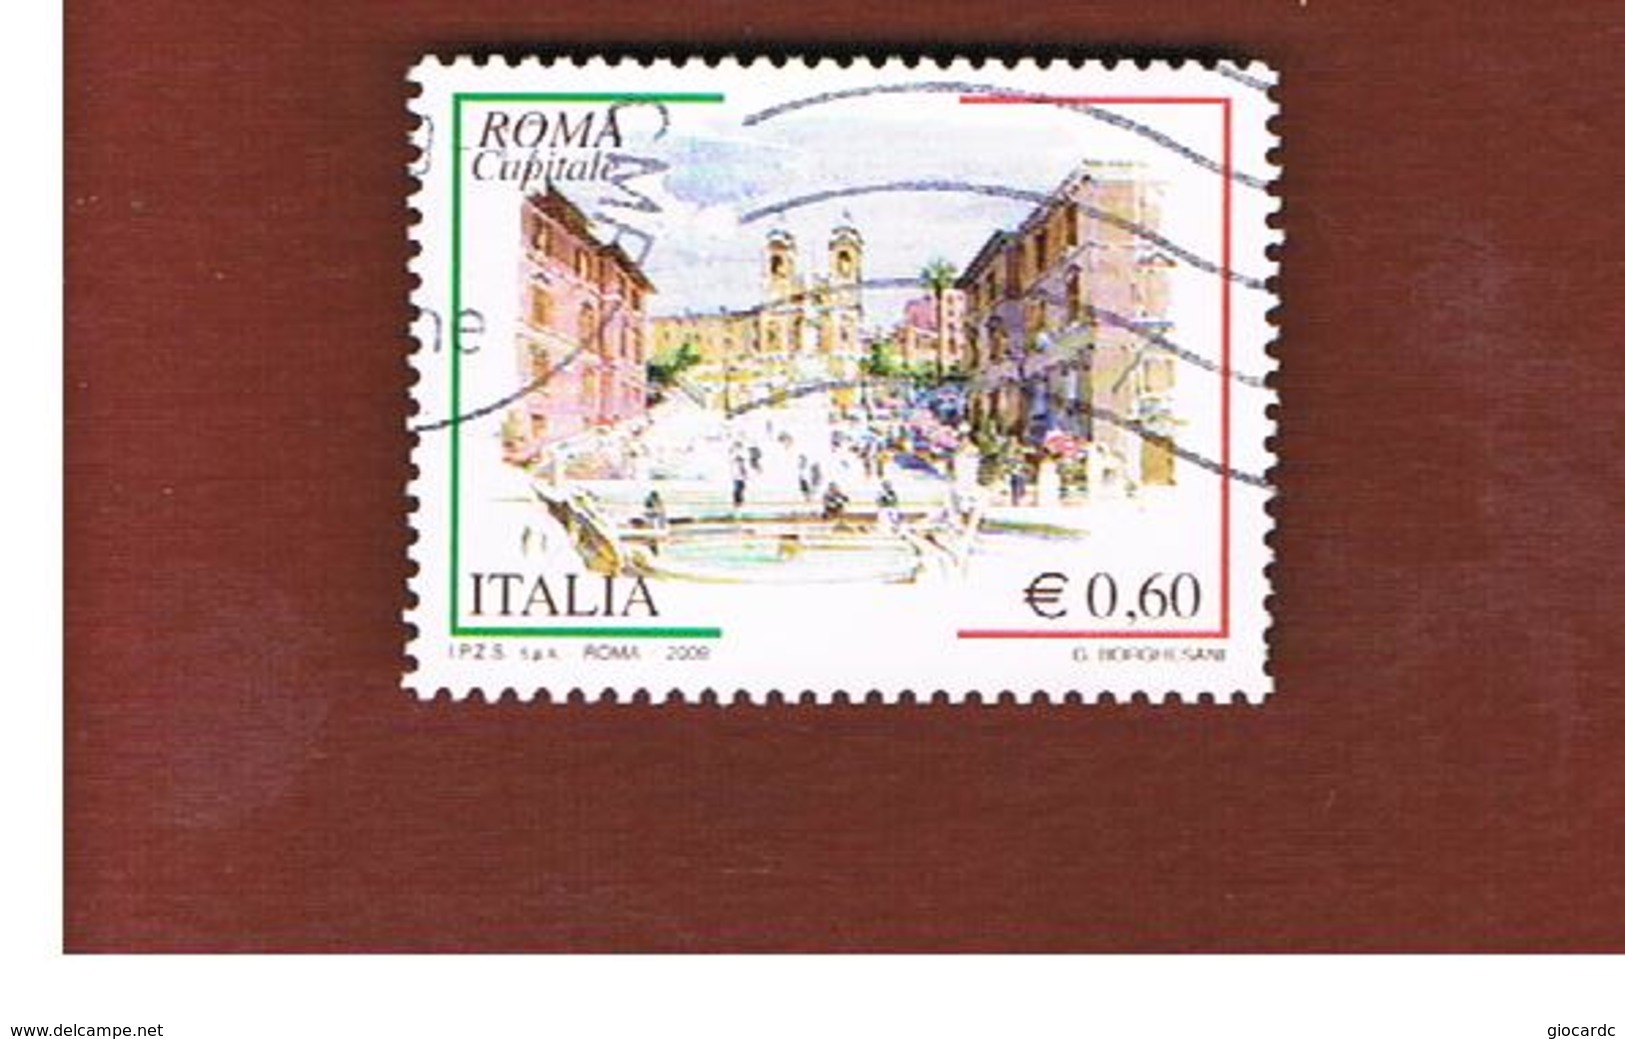 ITALIA REPUBBLICA  -   2009 ROMA CAPITALE   -   USATO  ° - 2001-10: Usati